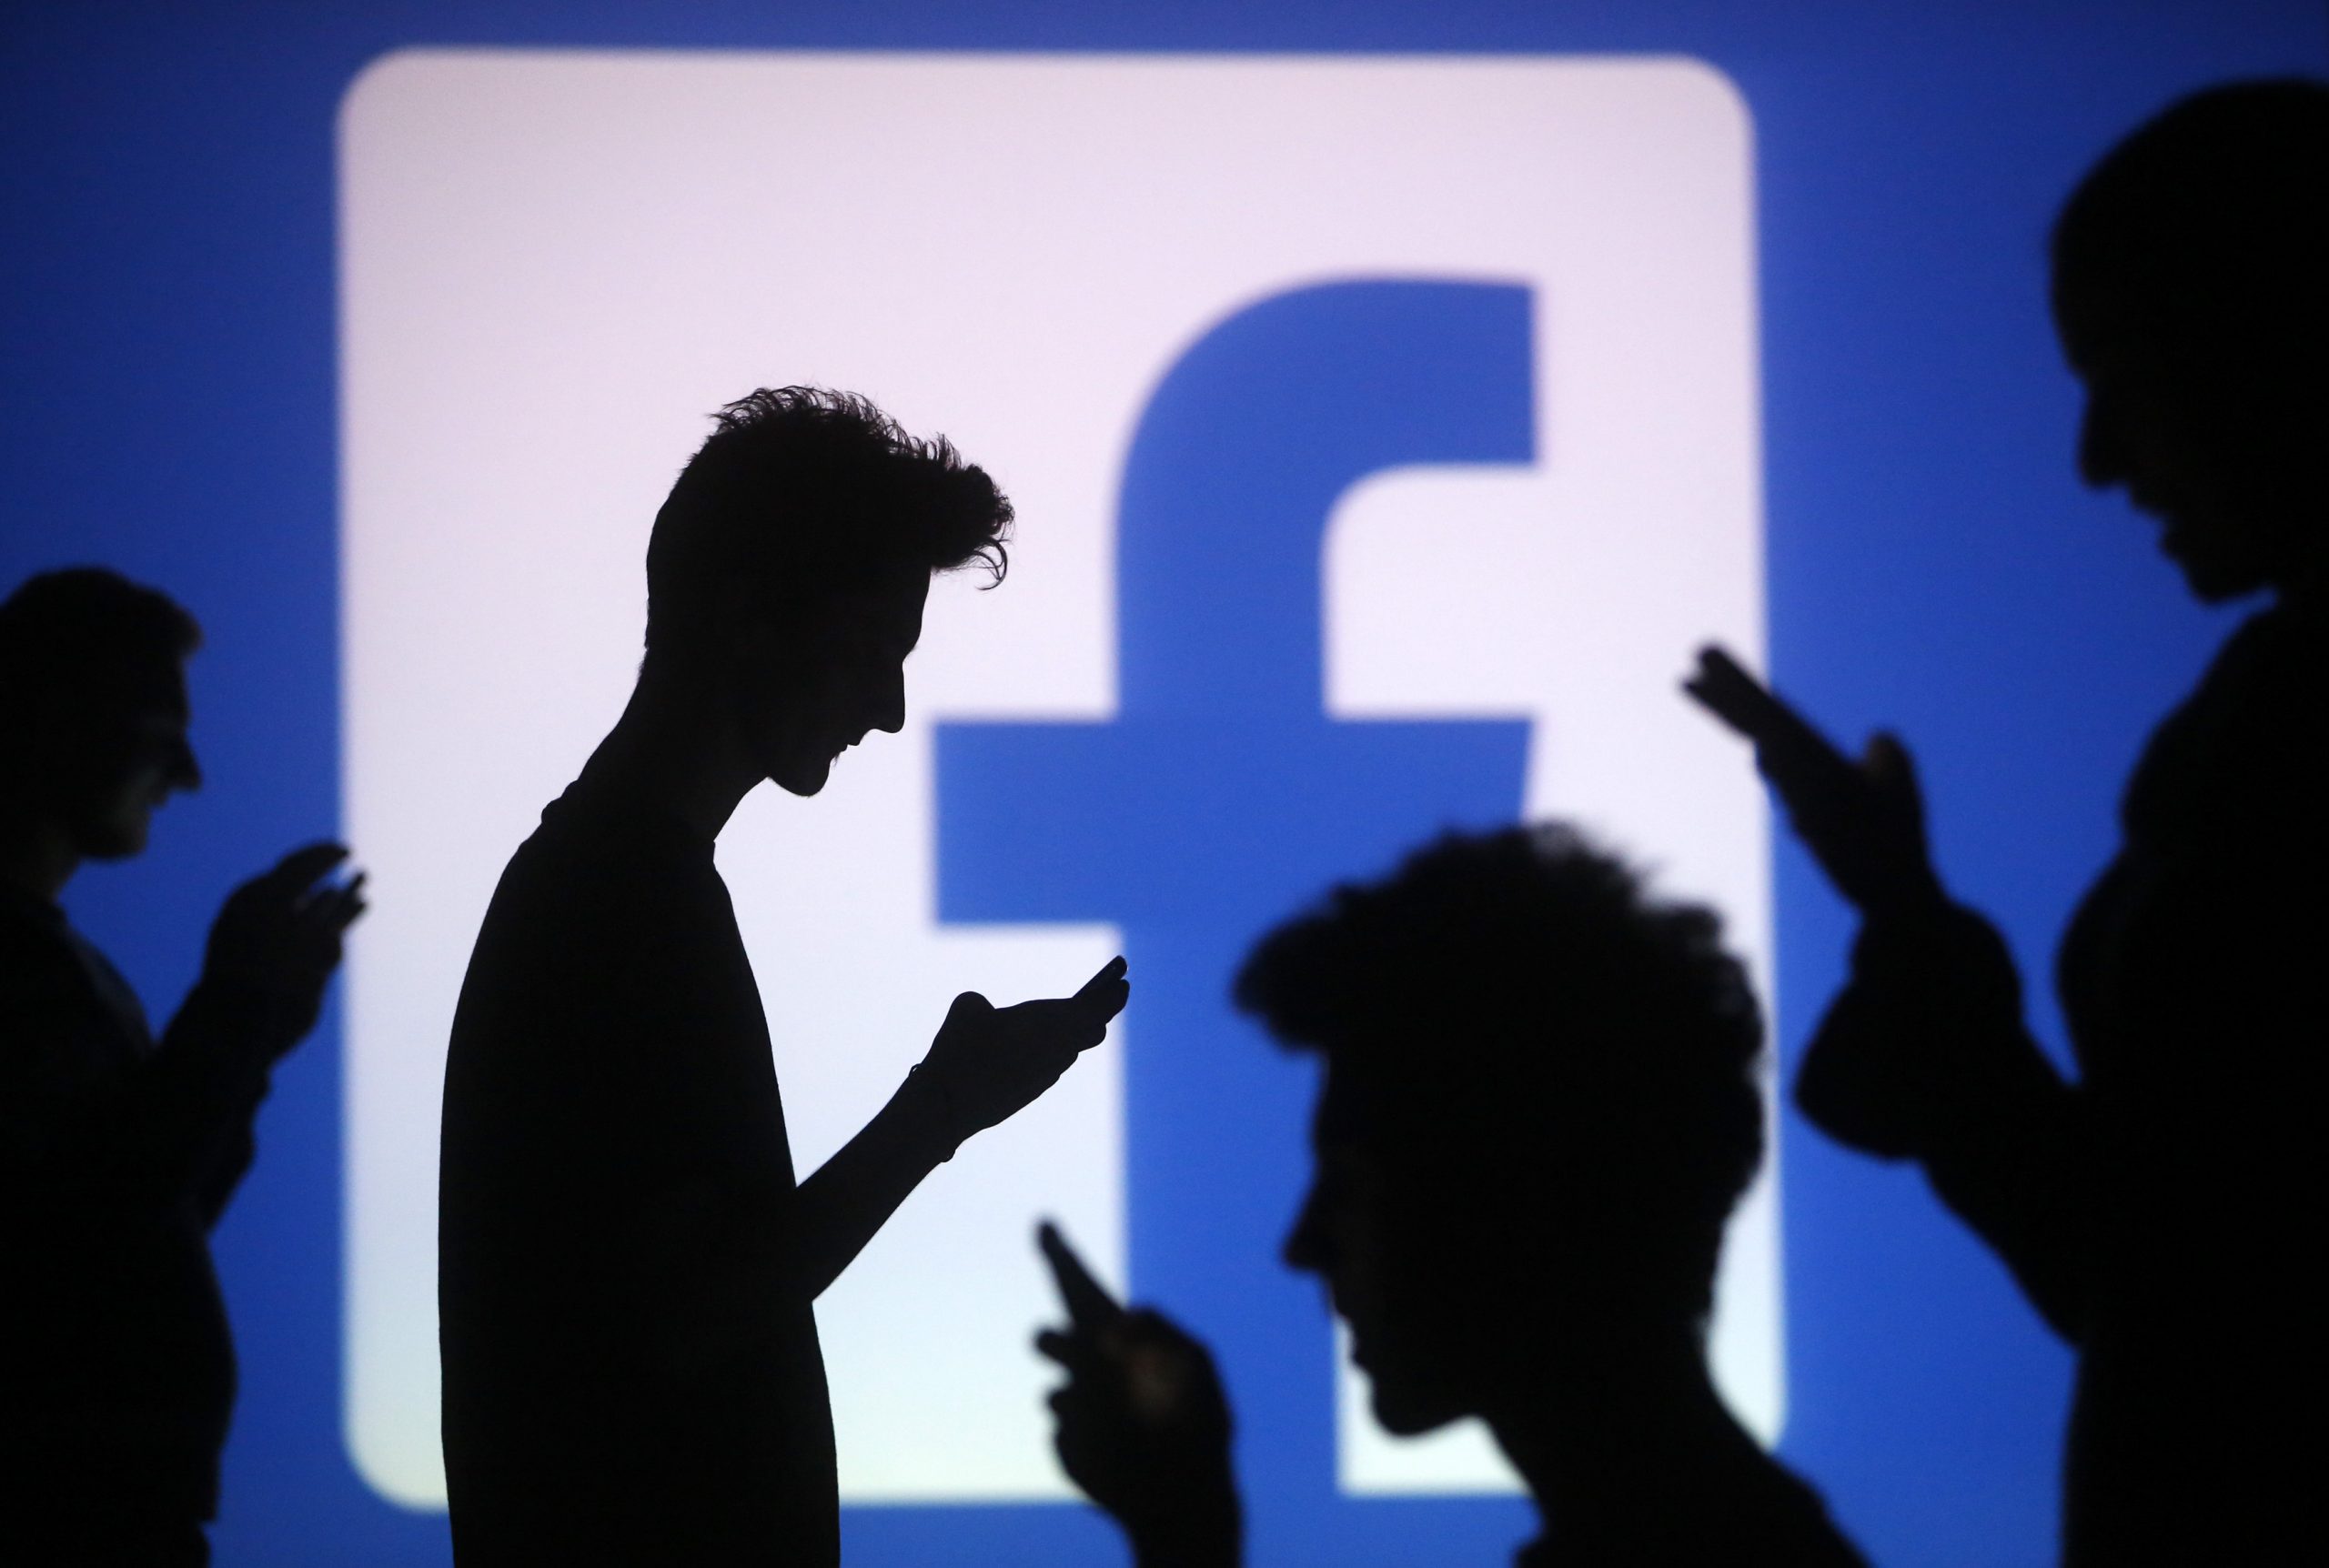 فيسبوك تقدم نصائح لمستخدمي شبكتها لإتخاذ القرارات الصحيحة بشأن الخصوصية